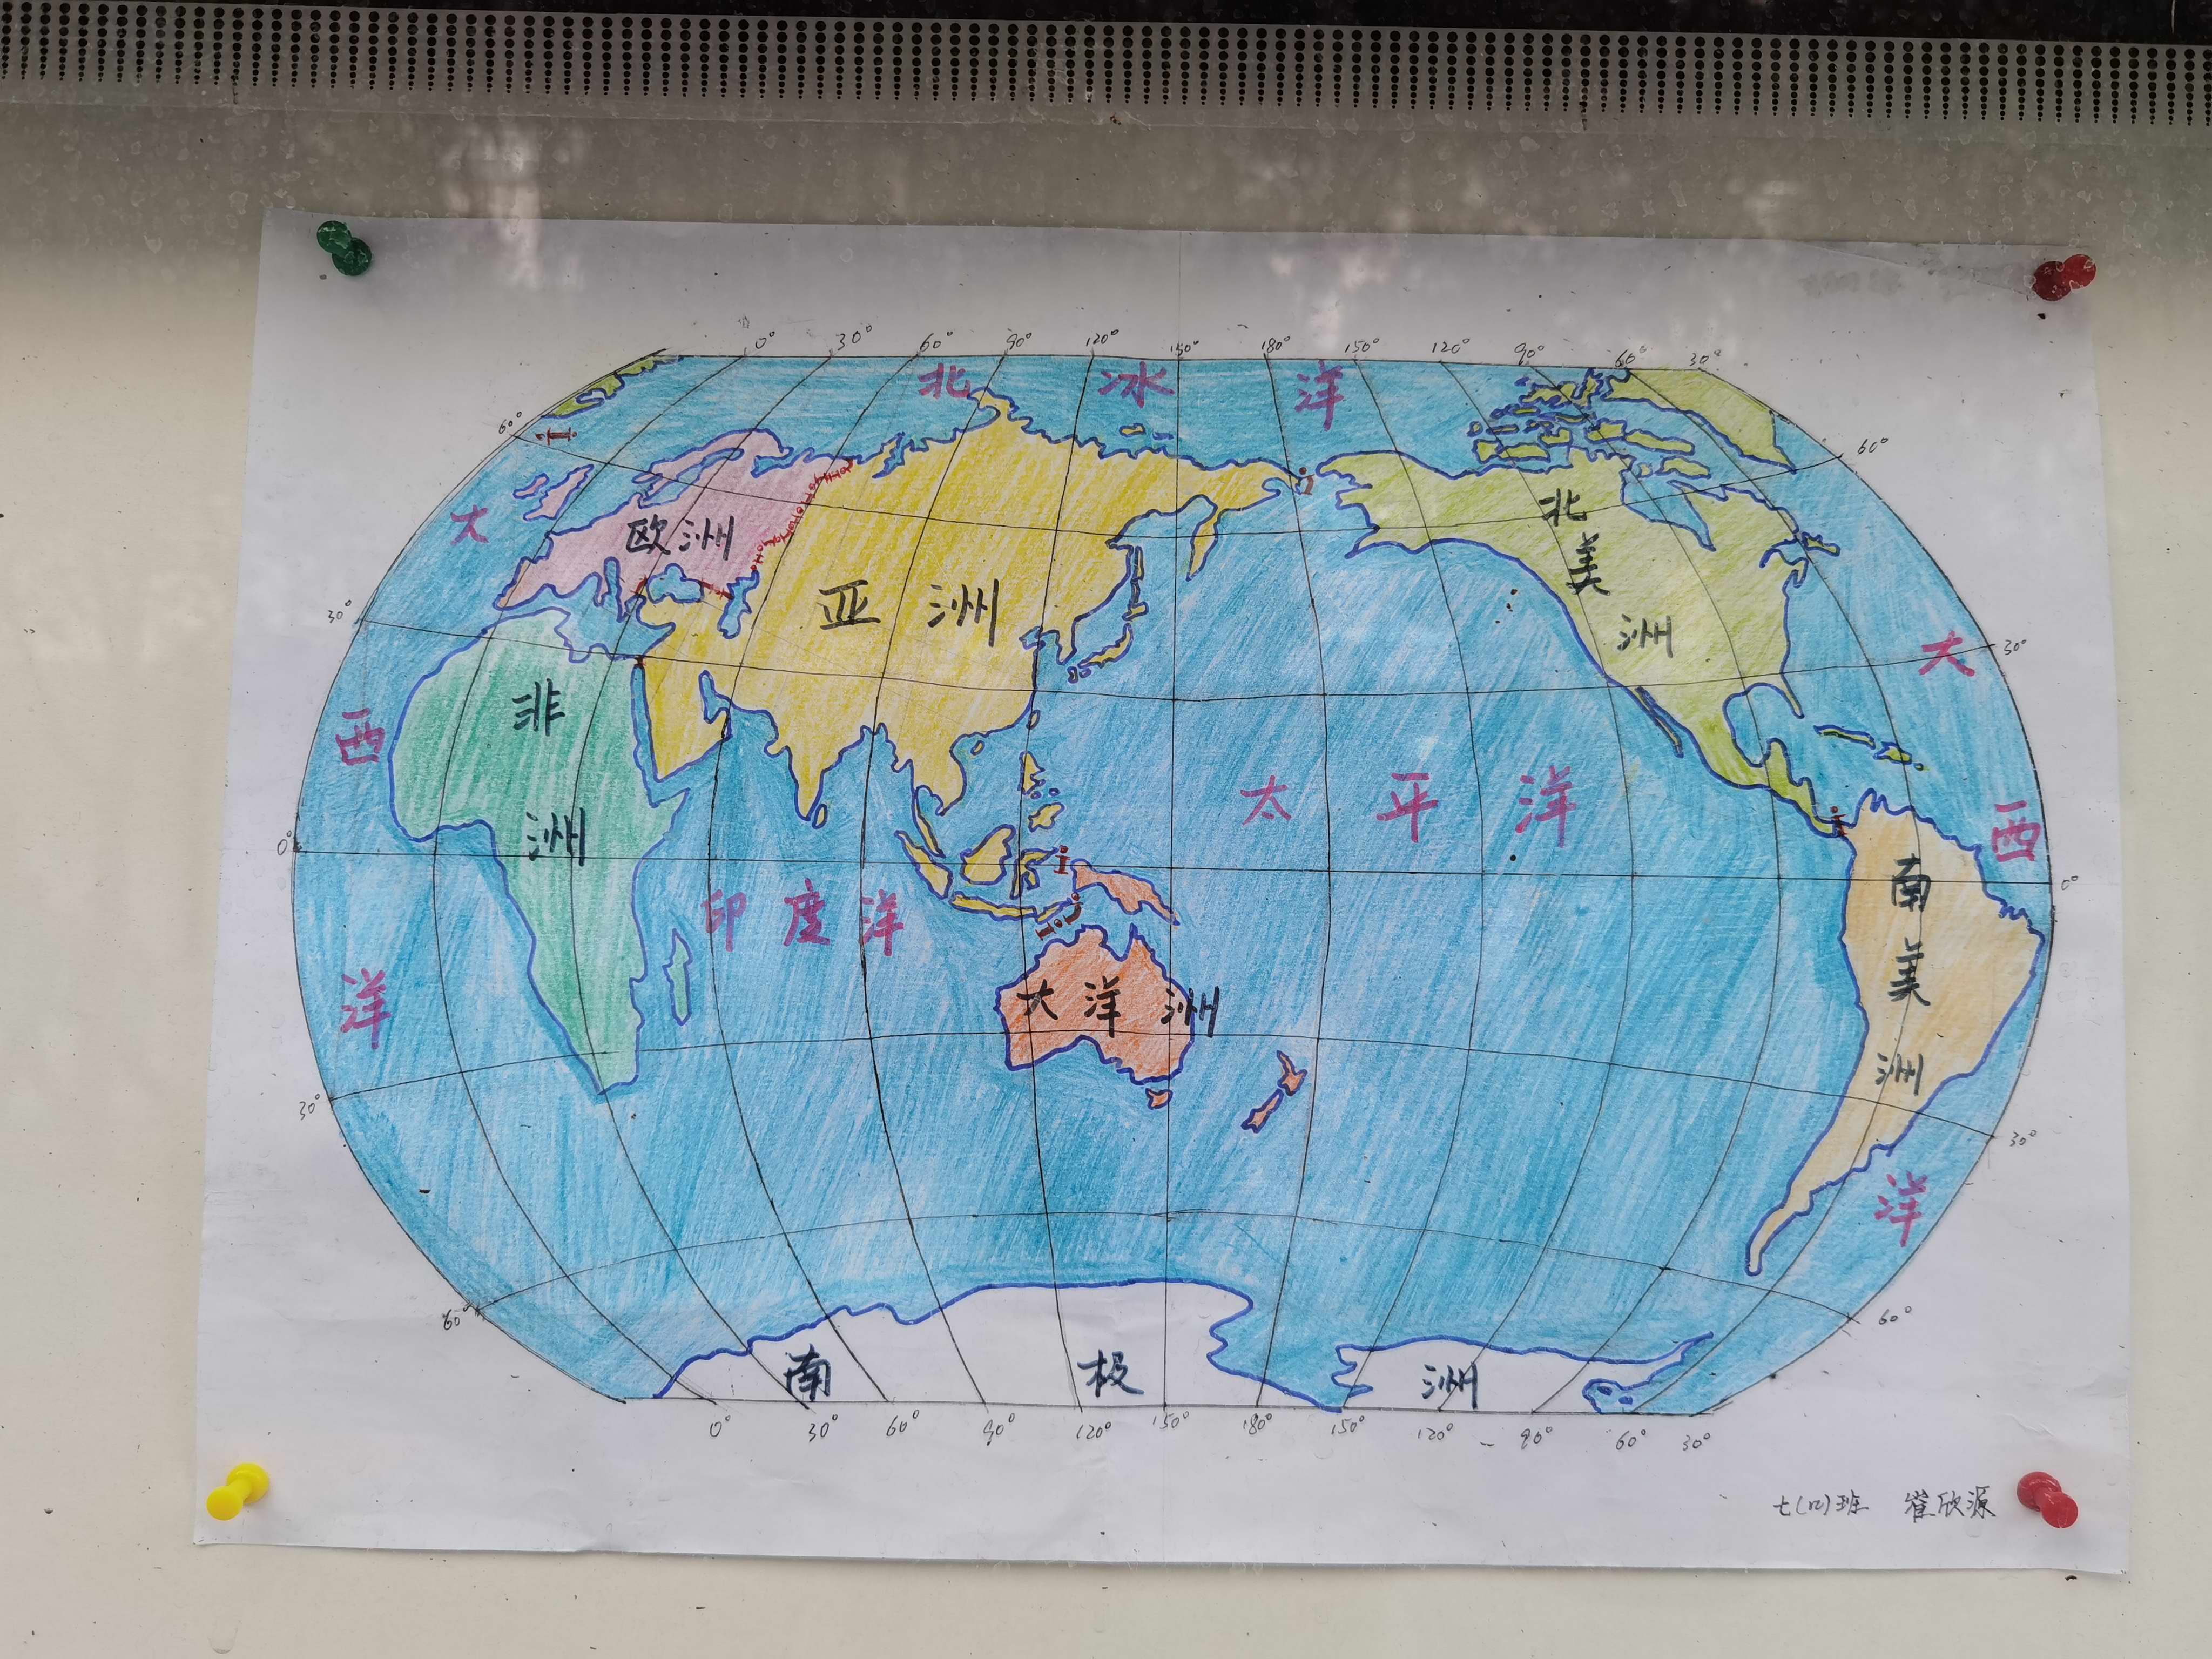 "慧眼看世界 巧手绘地图—郑州市第六初级中学举行地图绘图大赛